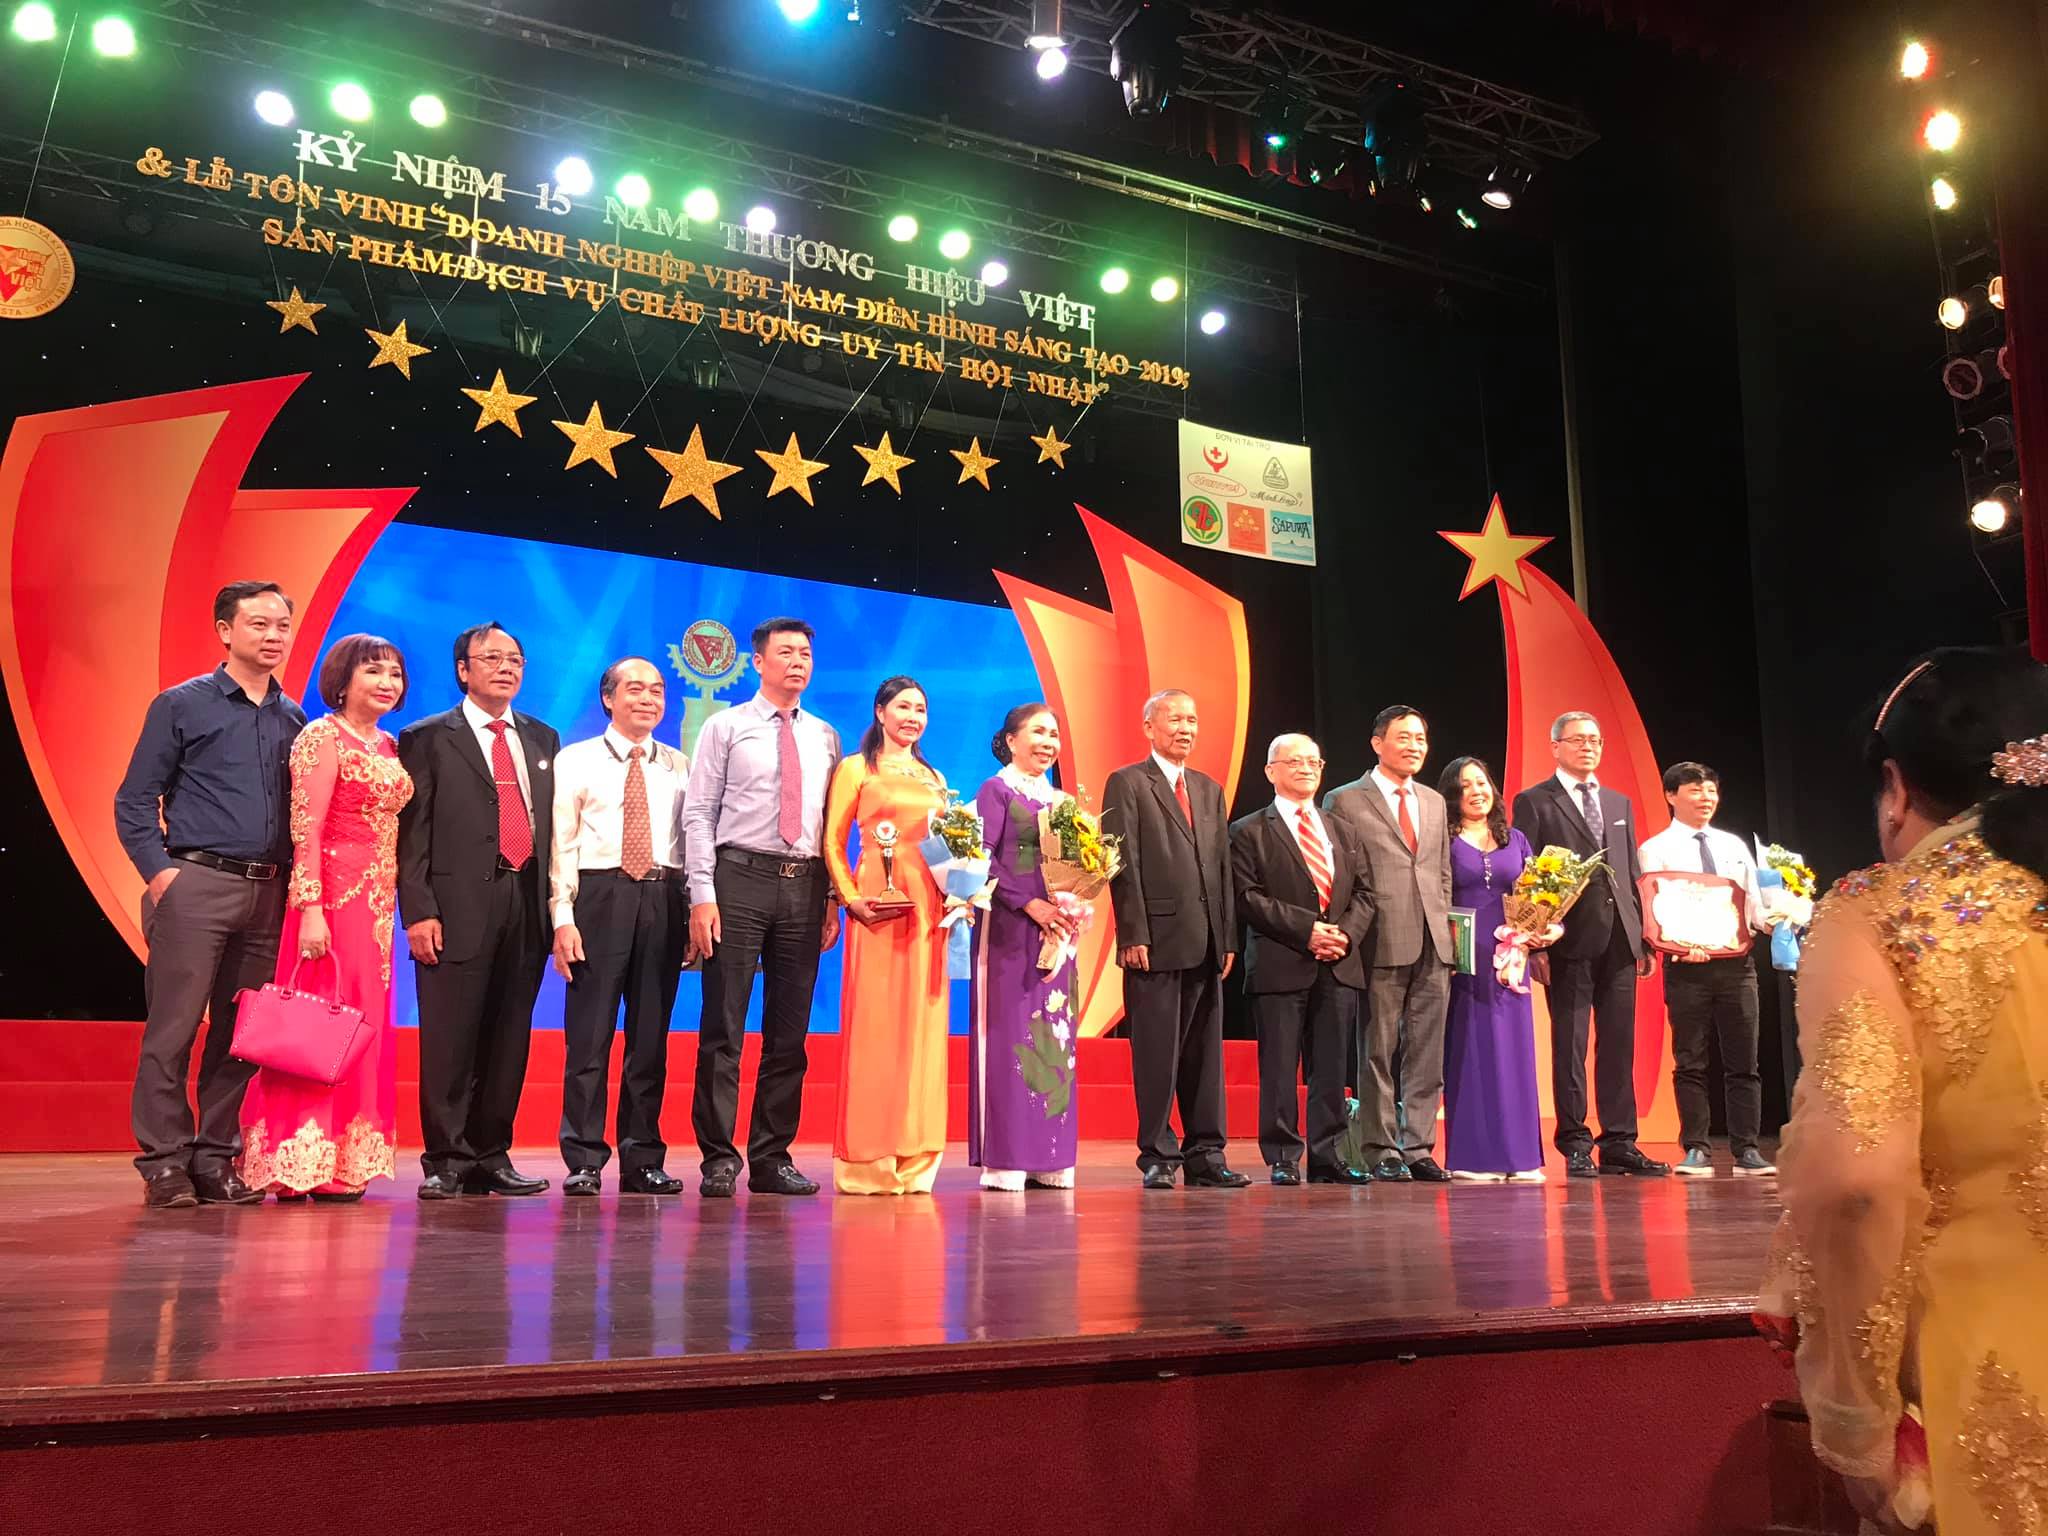 Bà Kim Hương - Giám đốc DNTN Vàng Kim Hương lên nhận giải Thương hiệu Việt 2019